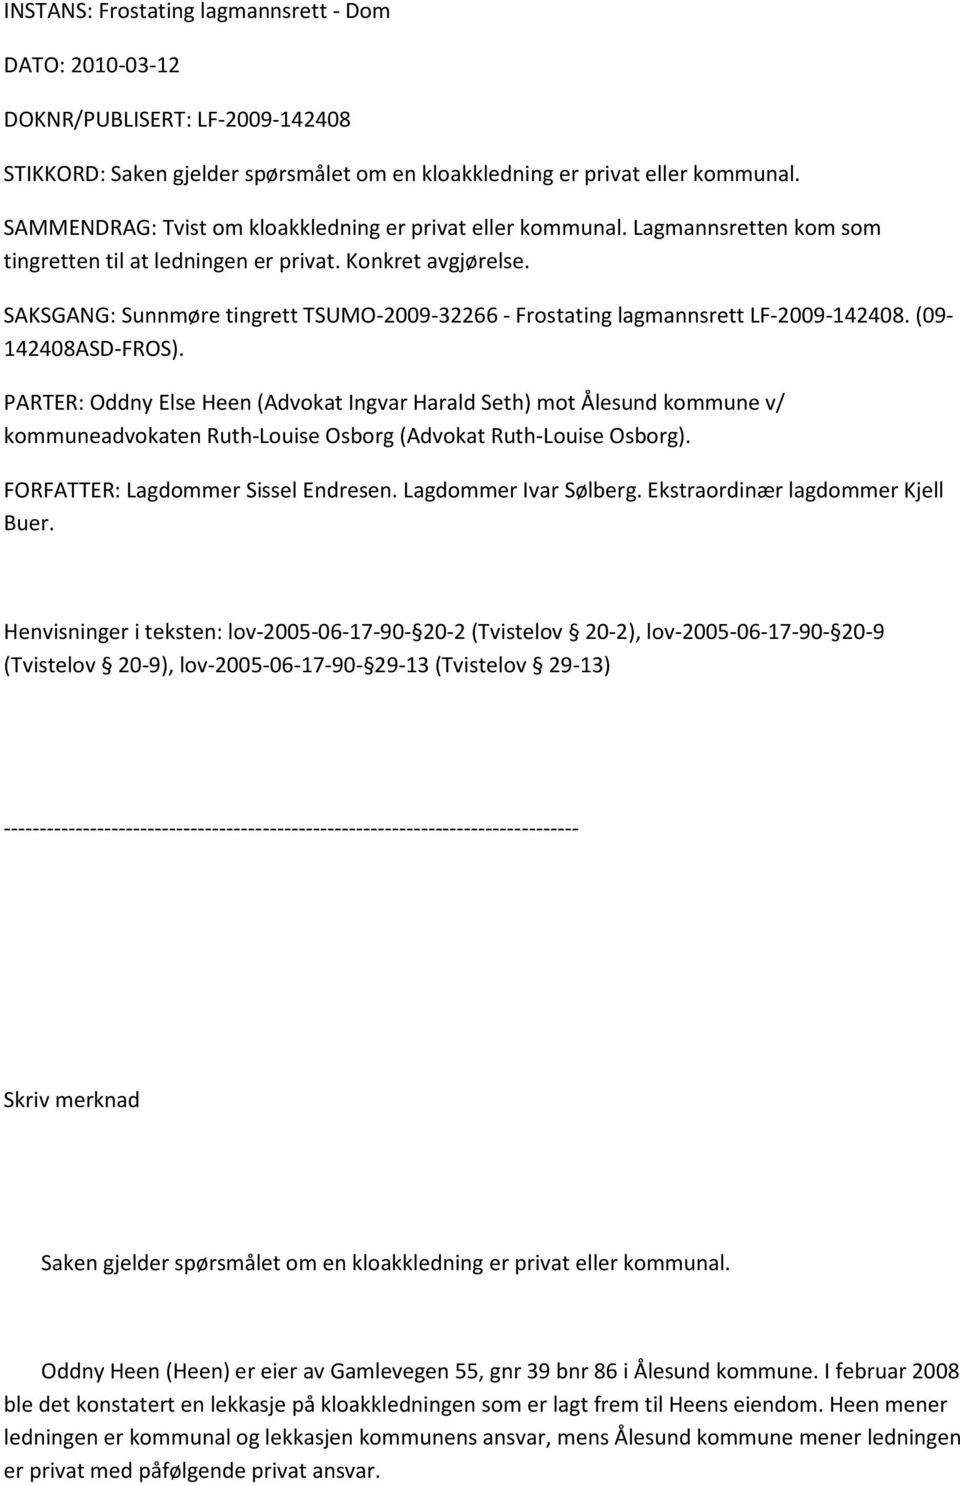 SAKSGANG: Sunnmøre tingrett TSUMO-2009-32266 - Frostating lagmannsrett LF-2009-142408. (09-142408ASD-FROS).